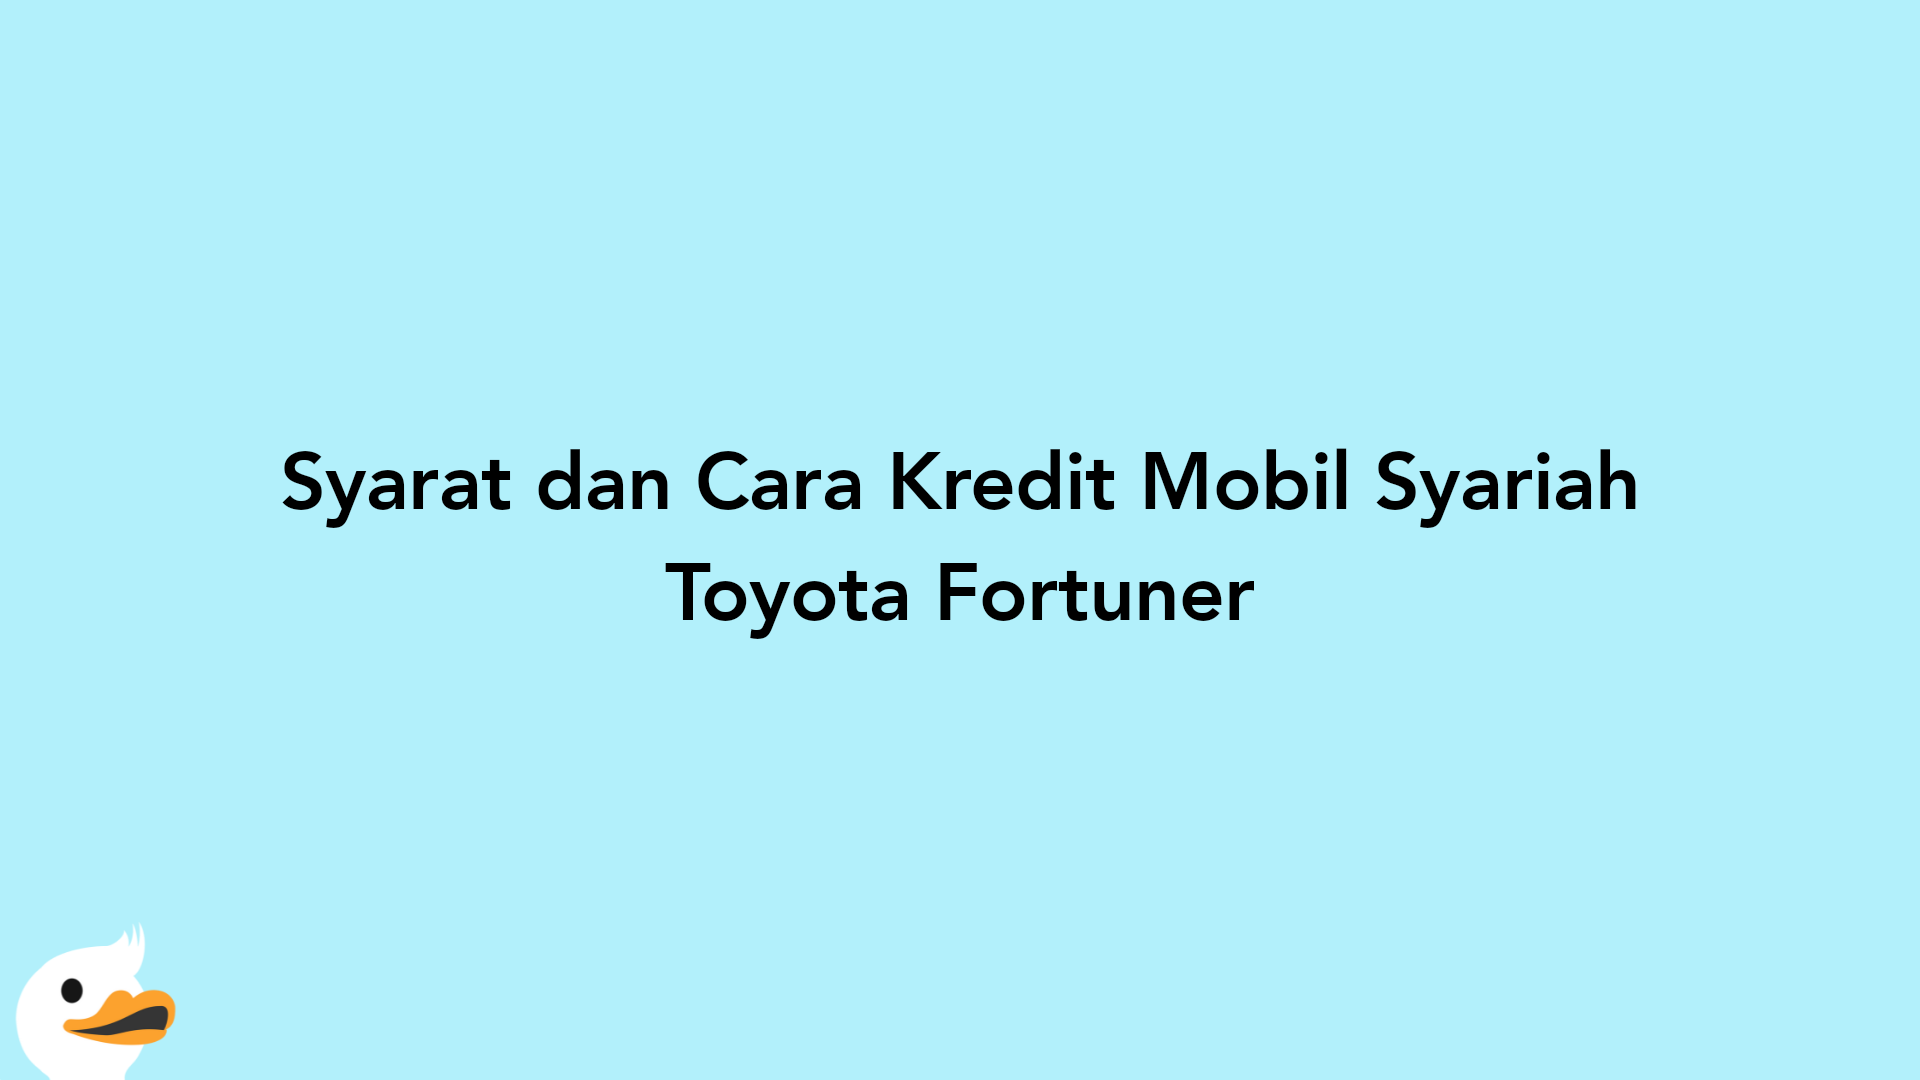 Syarat dan Cara Kredit Mobil Syariah Toyota Fortuner